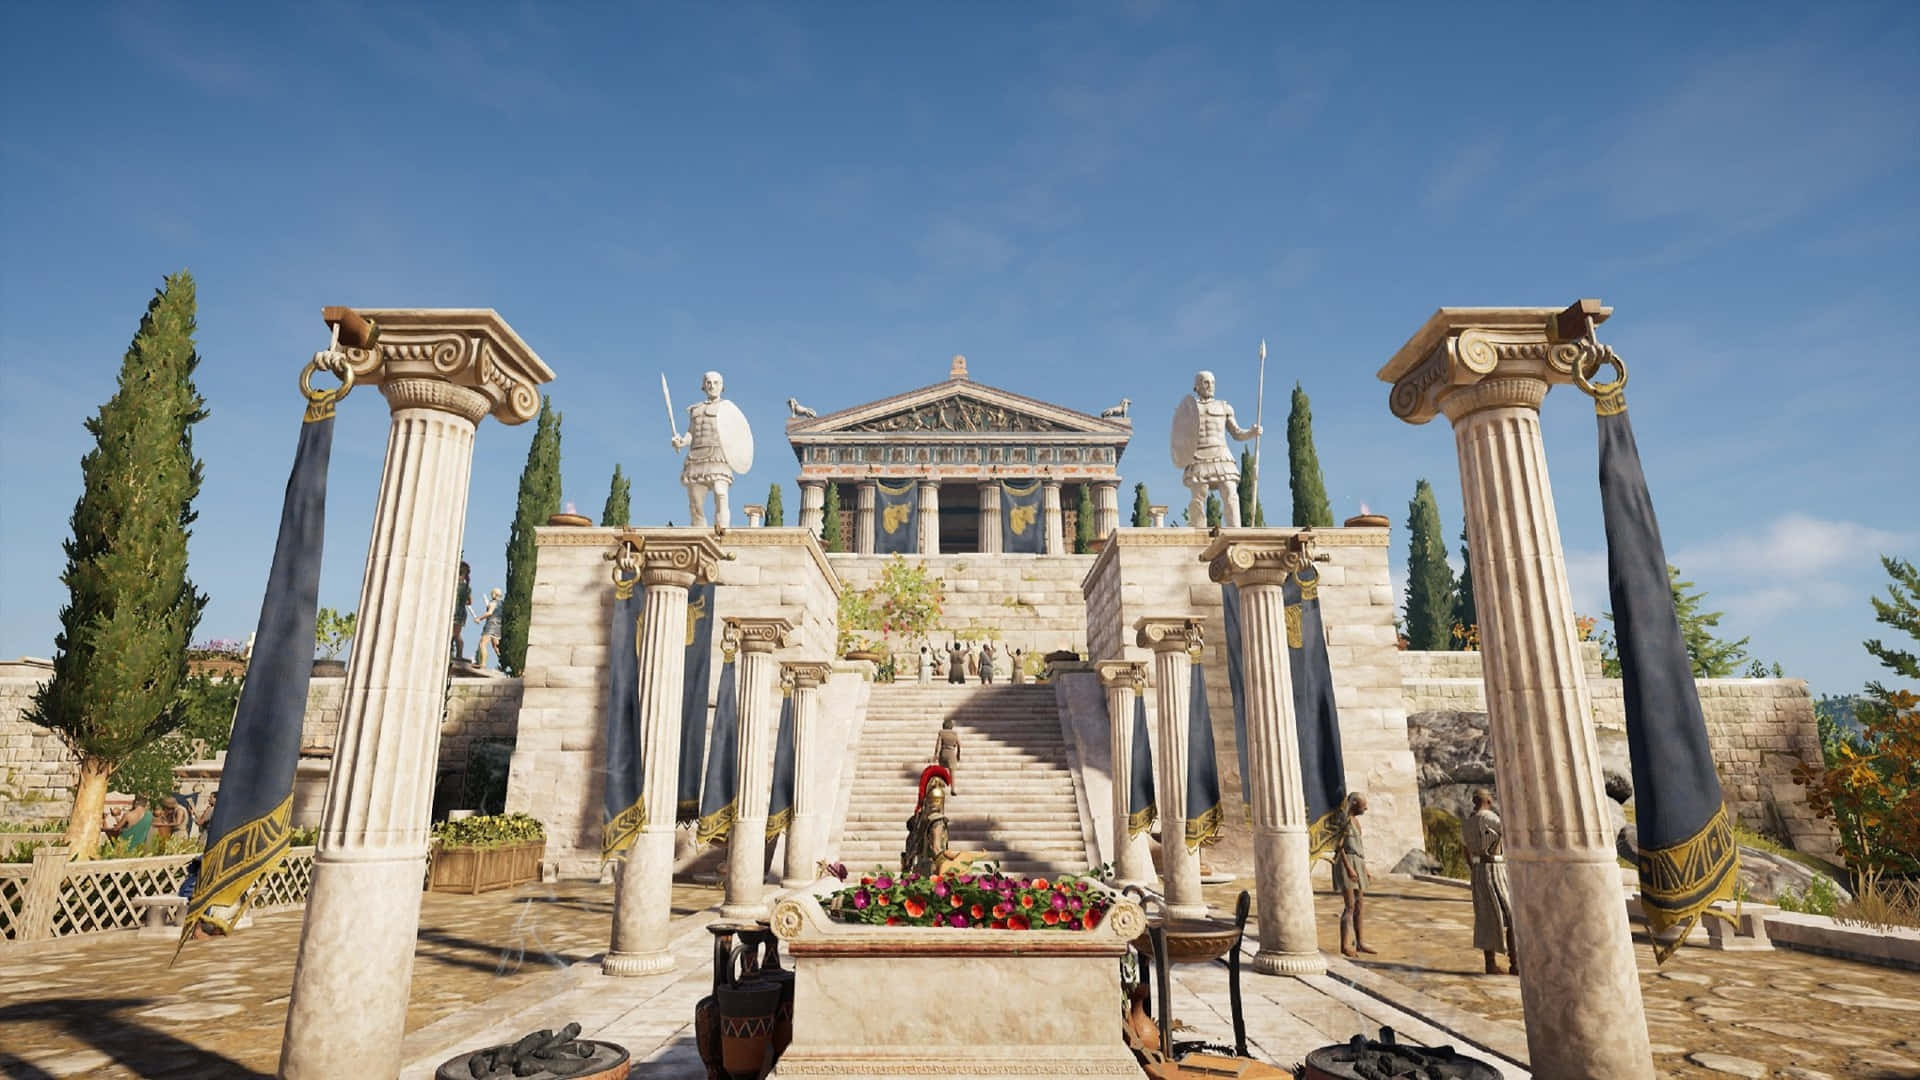 Fondode Pantalla De Assassin's Creed Odyssey En Atenas, Con Una Resolución De 1920x1080.